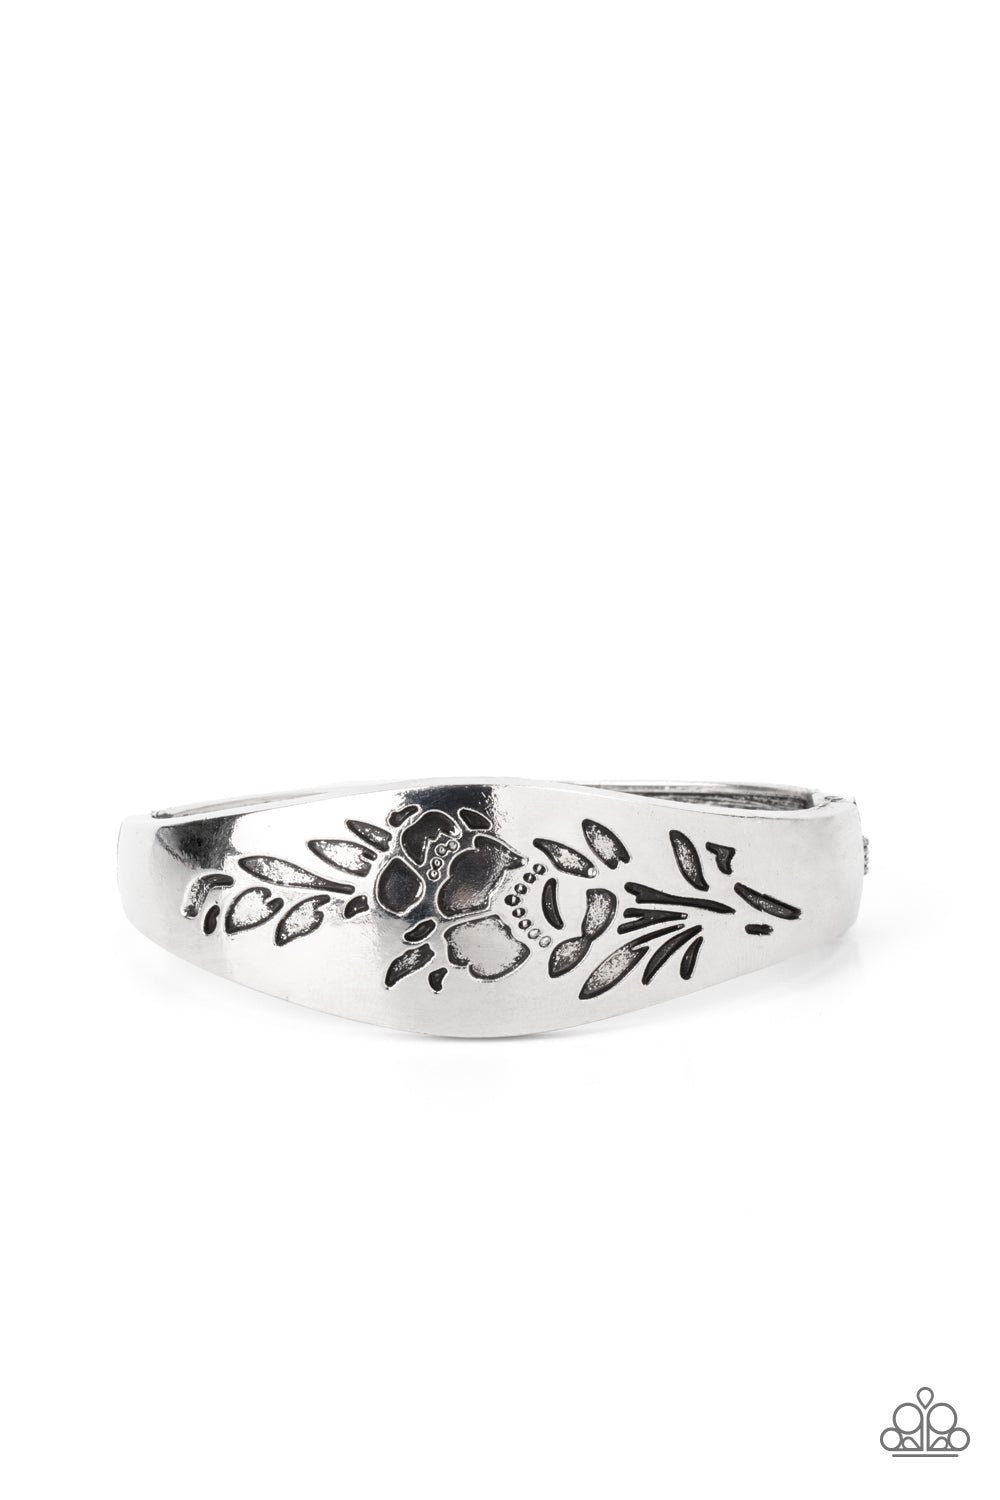 Fond of Florals - Silver Hinge Bangle Bracelet - Princess Glam Shop